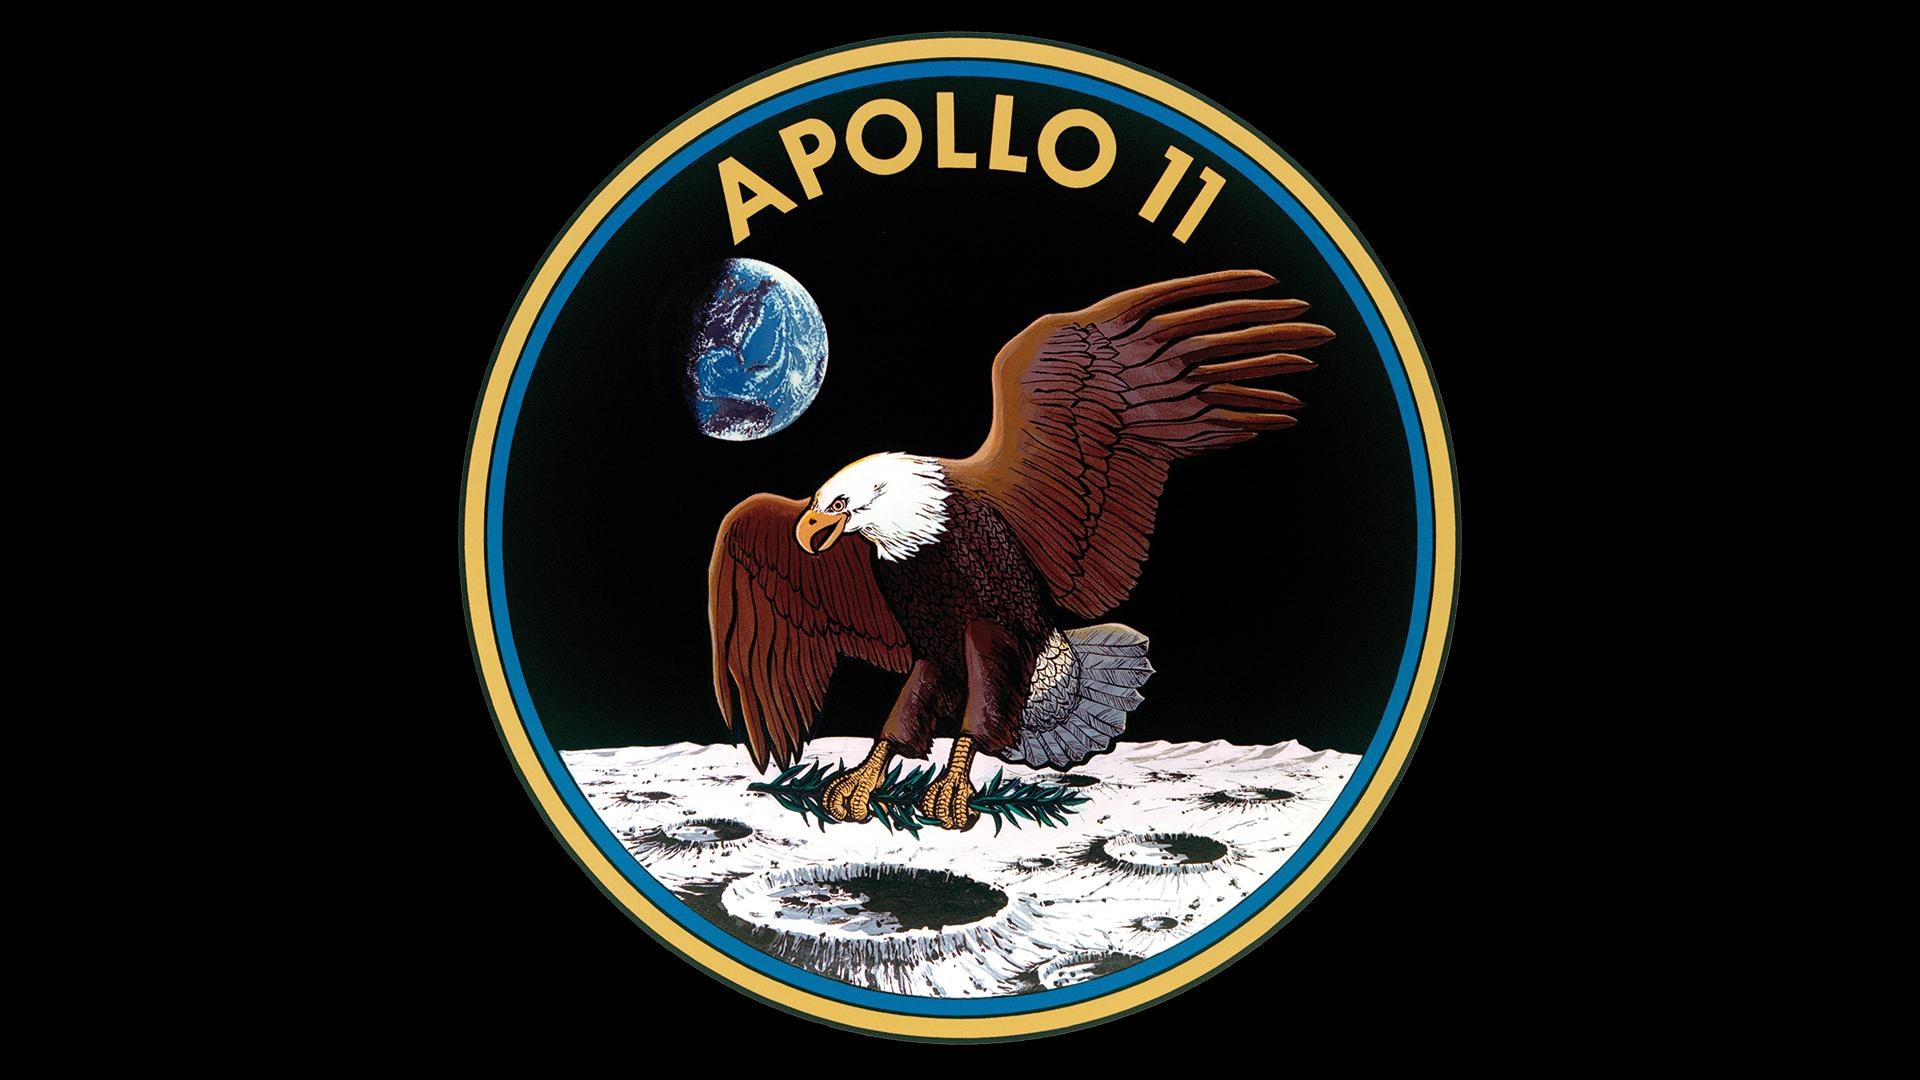 Apollo-11-Missionsemblem: Adler als Friedenstaube